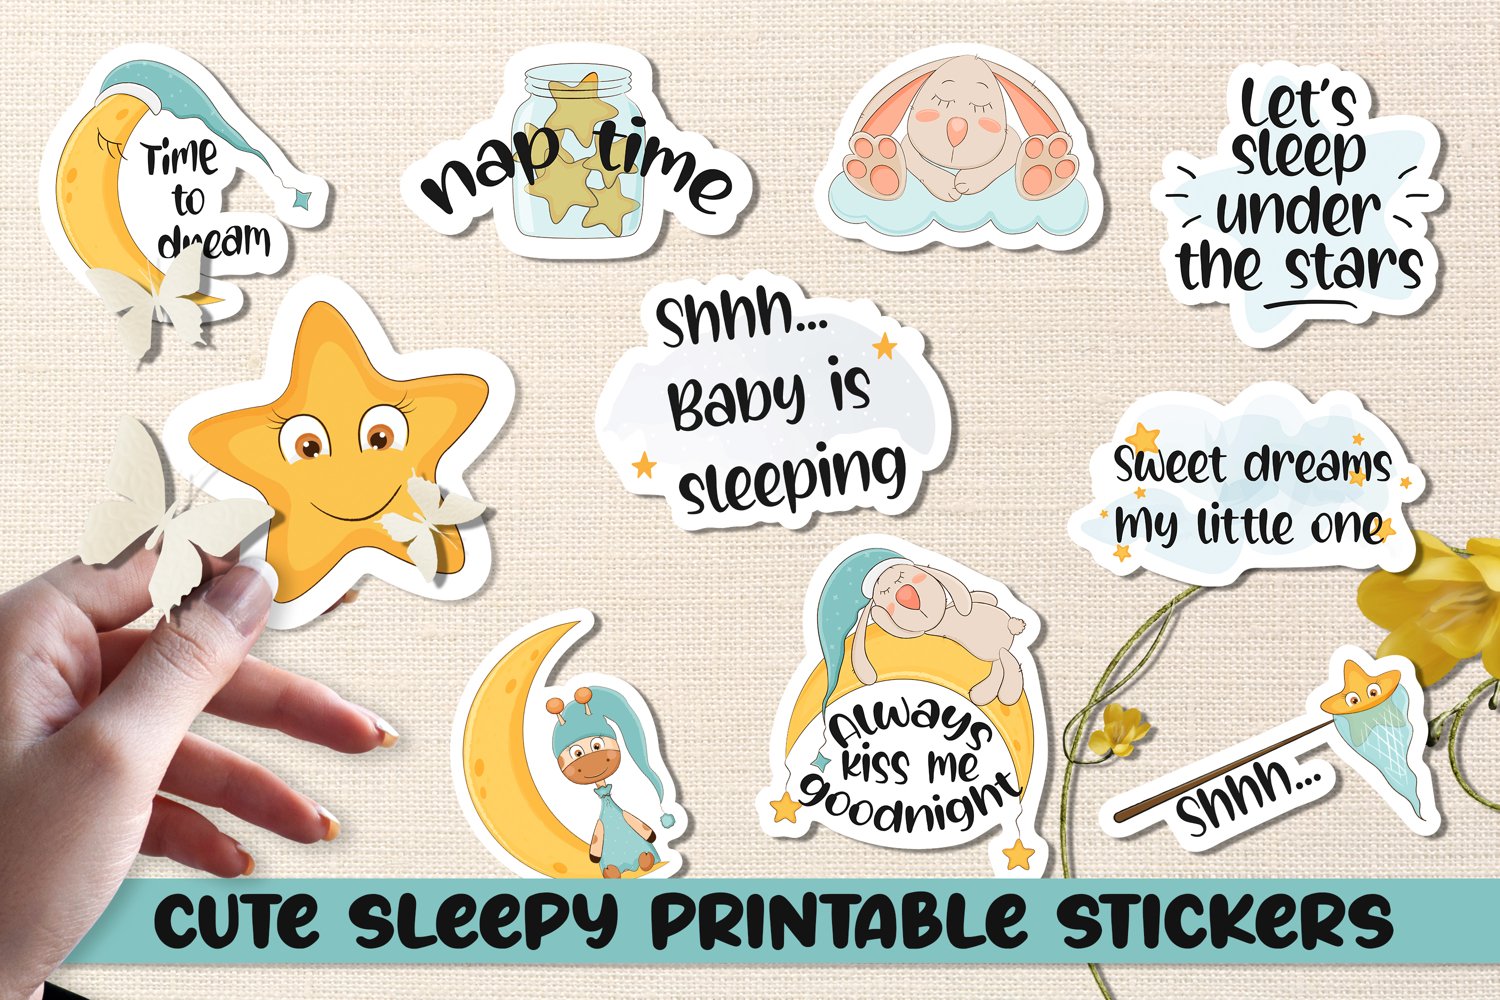 Cute sleepy printable stickers.